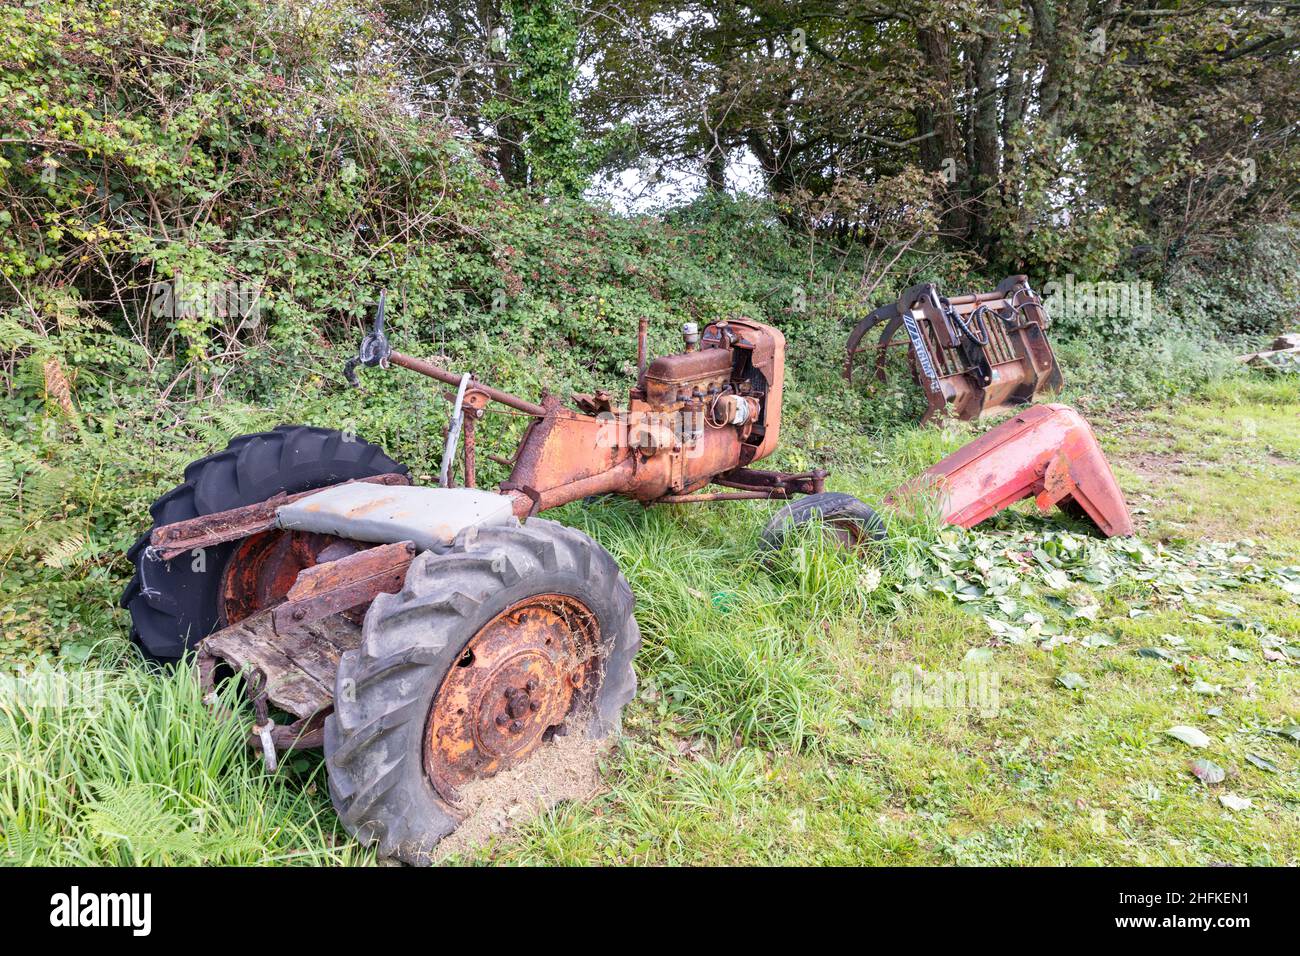 Tractor, rusty tractor, tractor, tractor graveyard, rusted tractor,farm tractor,classic tractor,oxidised,rusty,rusted,tractor,Cornwall, UK, England Stock Photo